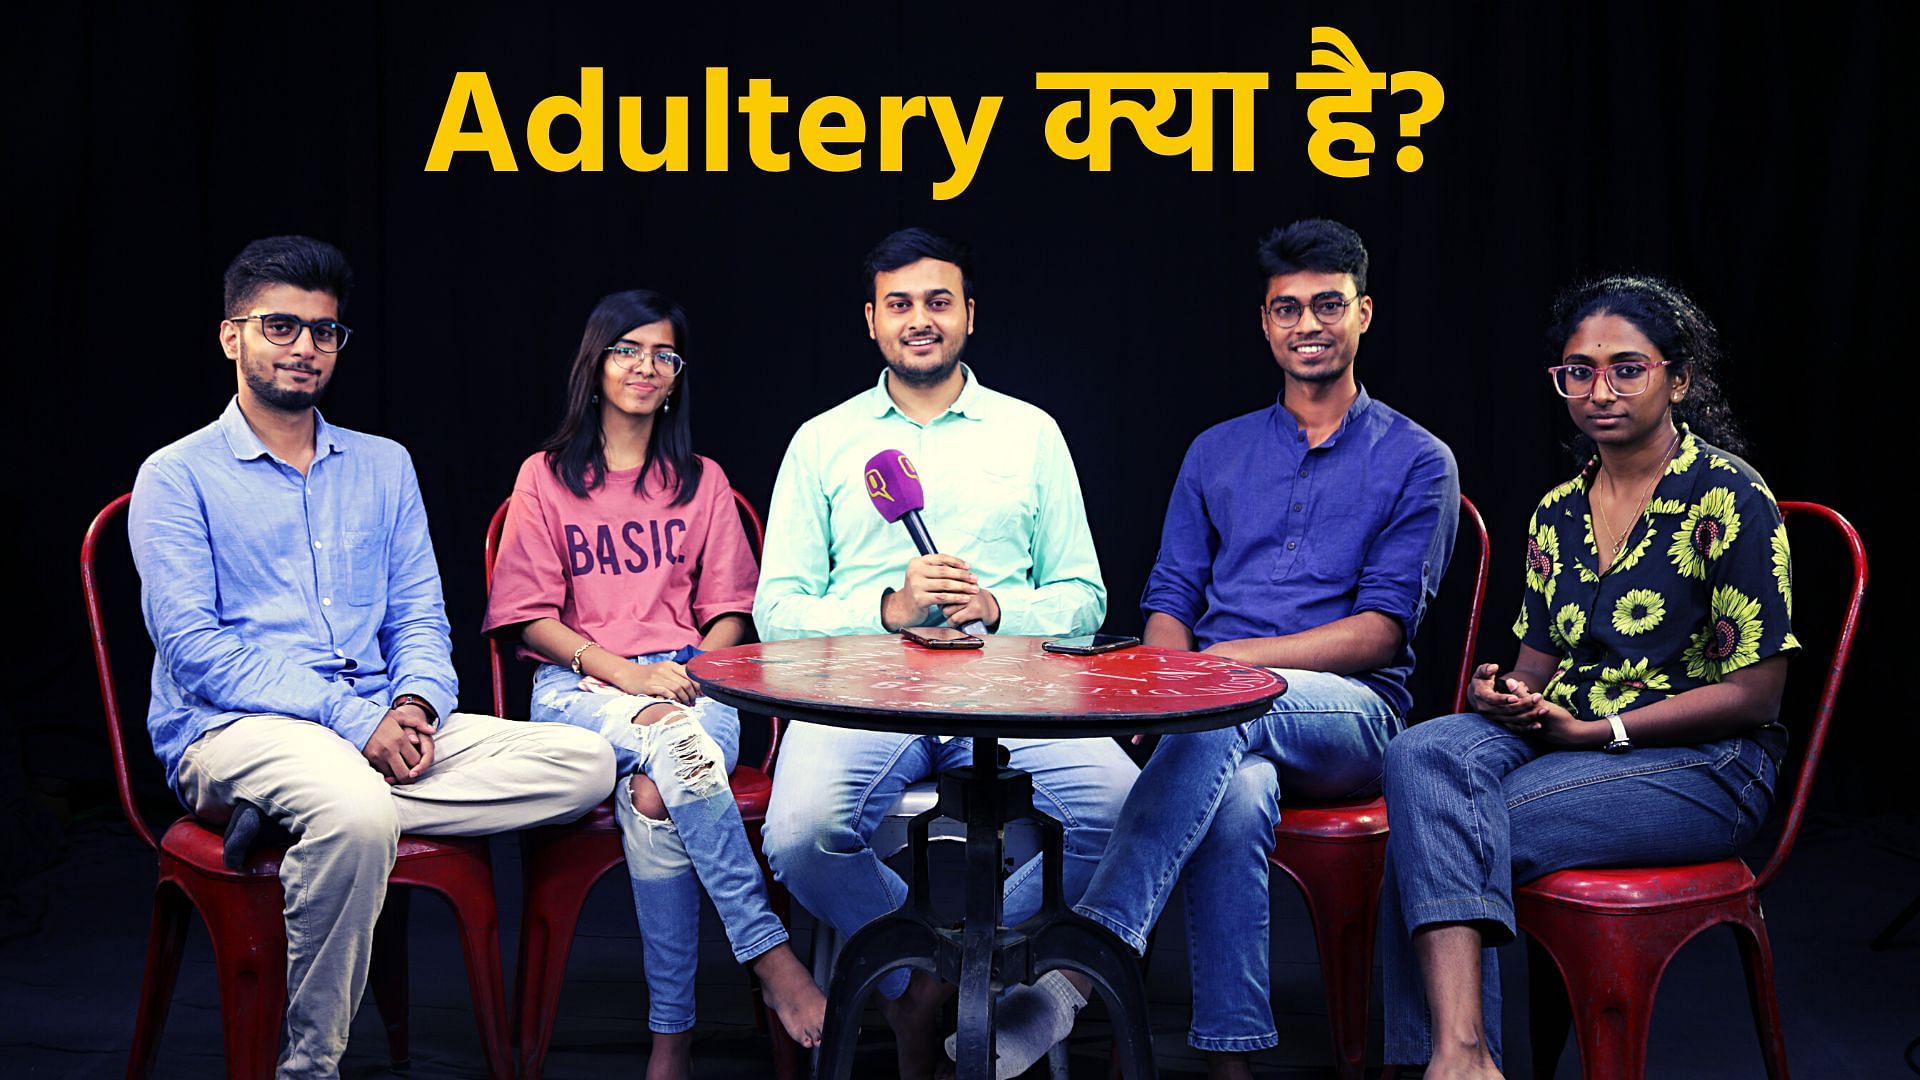 <div class="paragraphs"><p>Adultery क्या है? भारत में अडल्ट्री अवैध नहीं, शादी के बाद किसी और से सेक्स सही?</p></div>